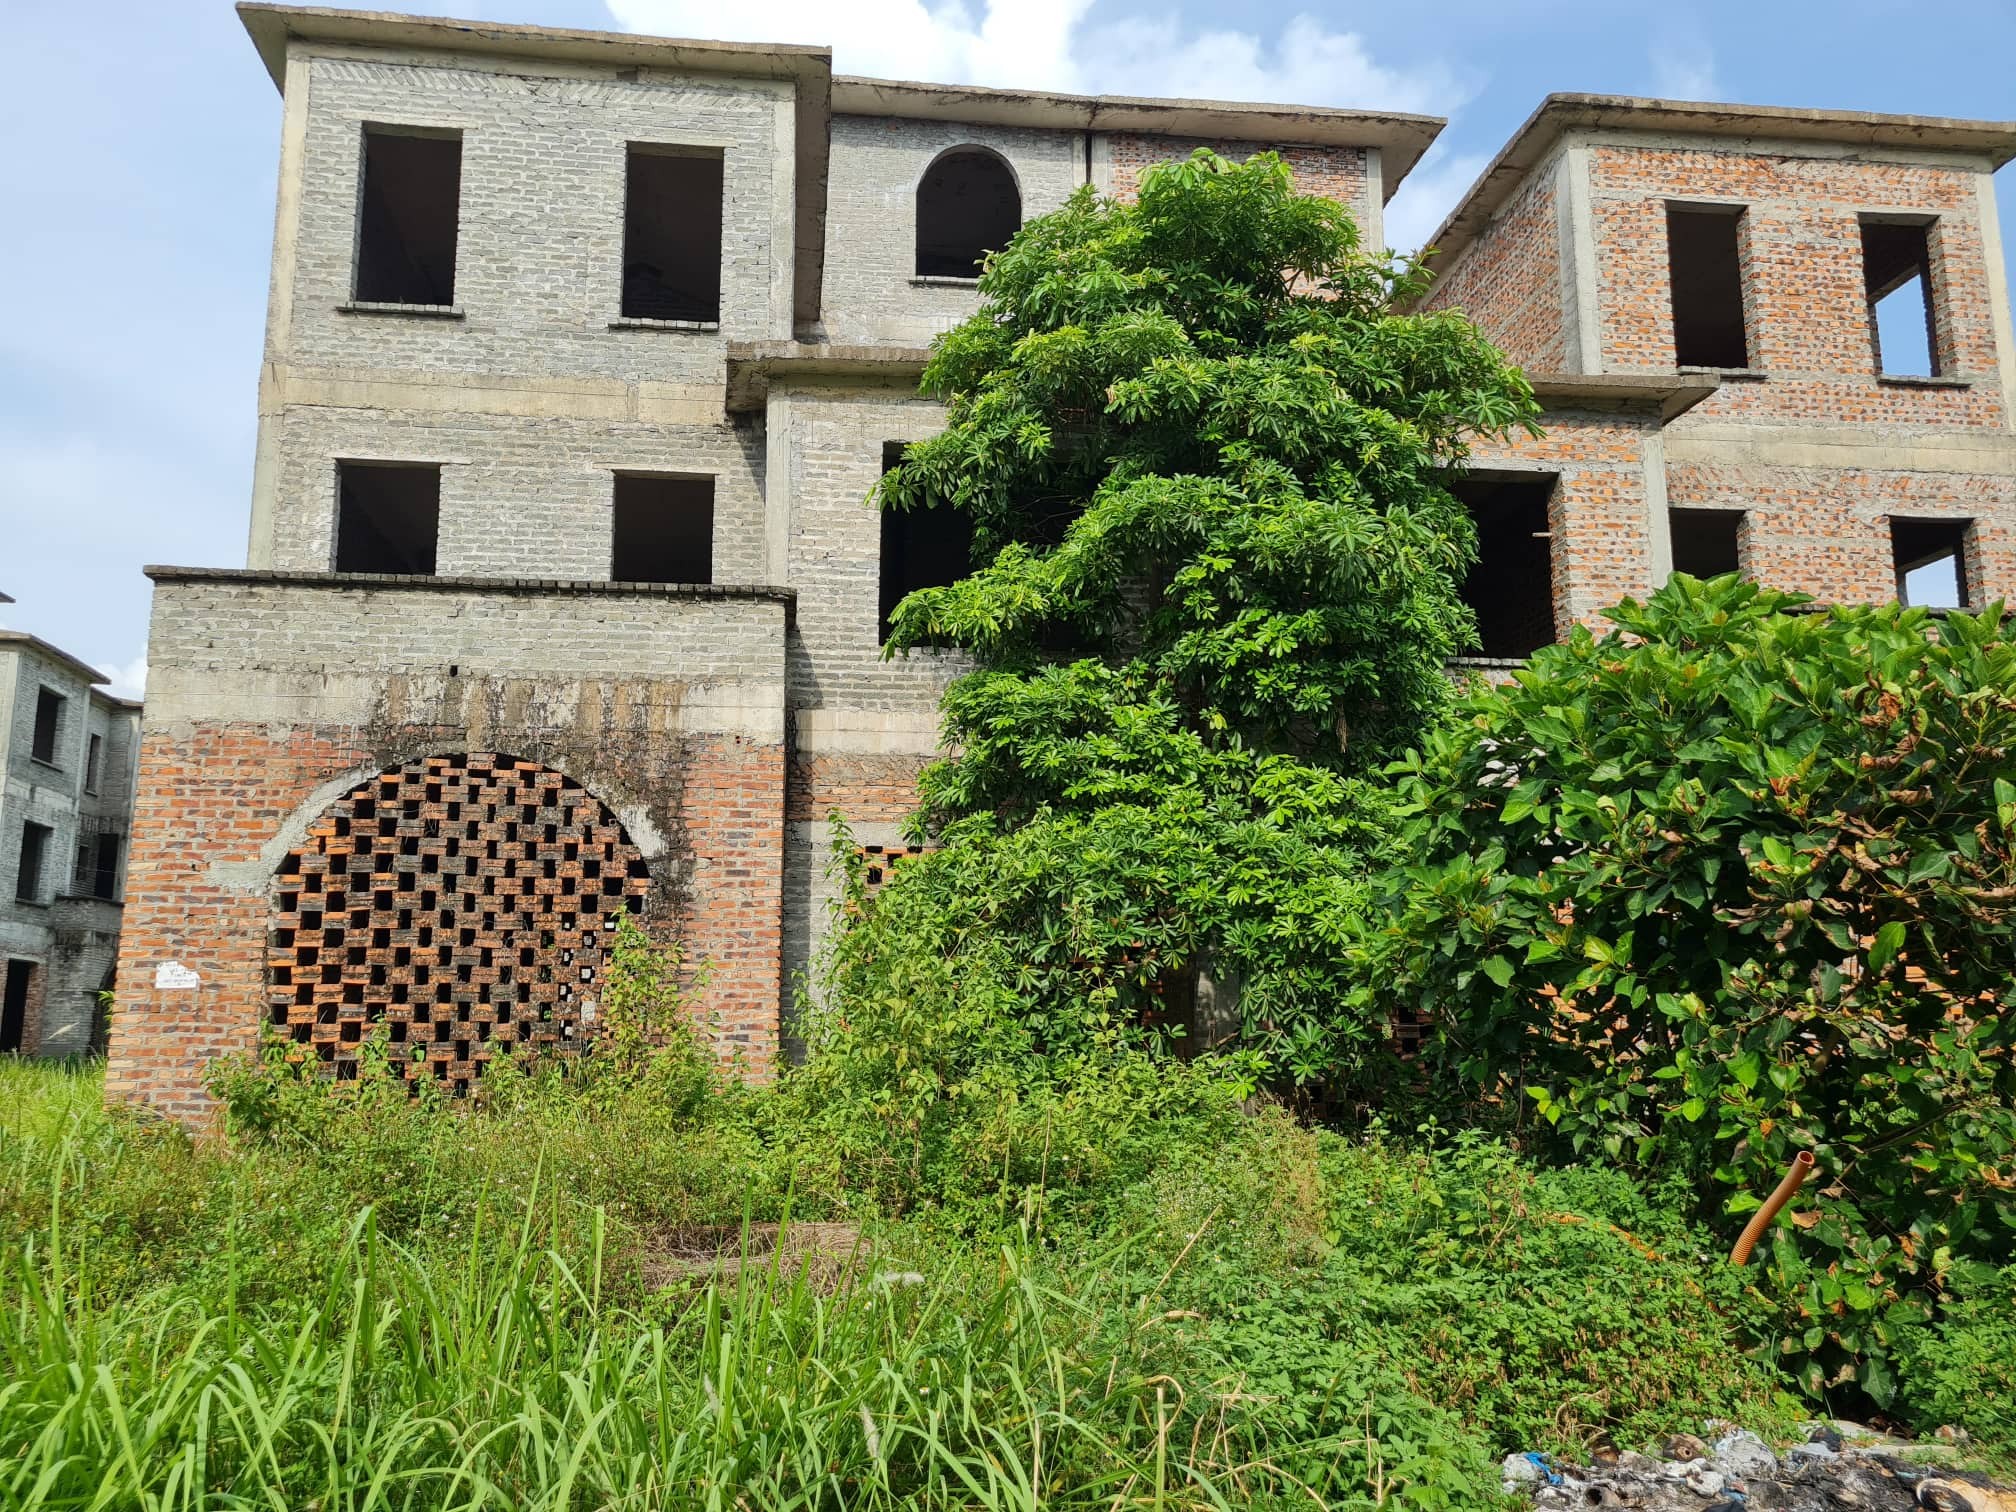 
Trong khuôn viên của một căn biệt thự đơn lập bị bỏ hoang, lối vào bị bịt kín bởi cỏ dại.
